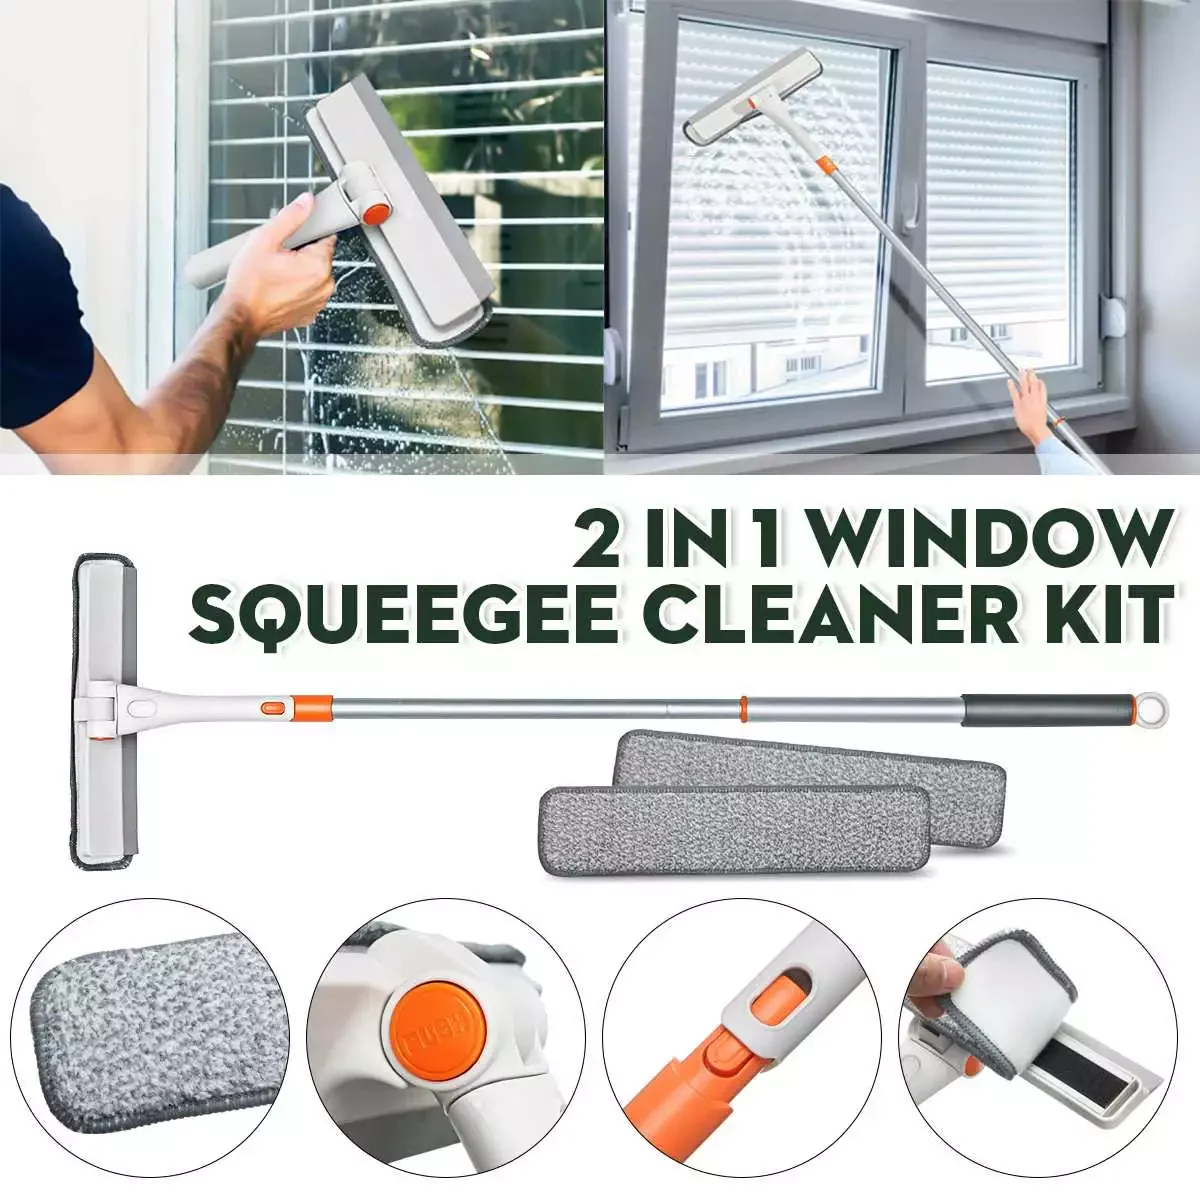 

Скребок для мытья окон, швабра из мягкой микрофибры, с длинной ручкой, телескопическая, для уборки дома, кухни, автомобиля